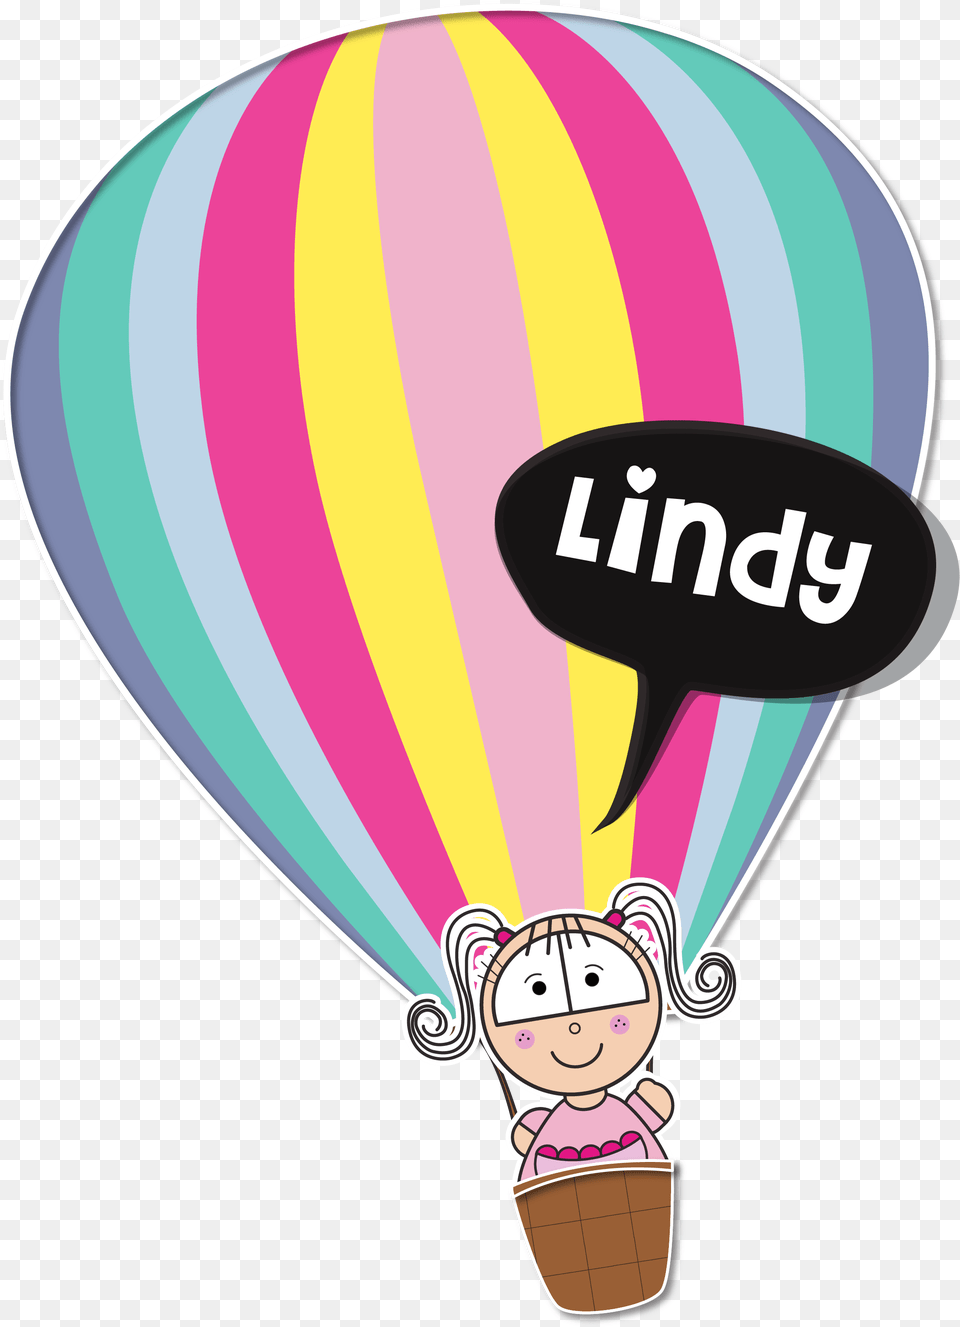 Lindy Hot Air Balloon, Aircraft, Hot Air Balloon, Transportation, Vehicle Free Transparent Png